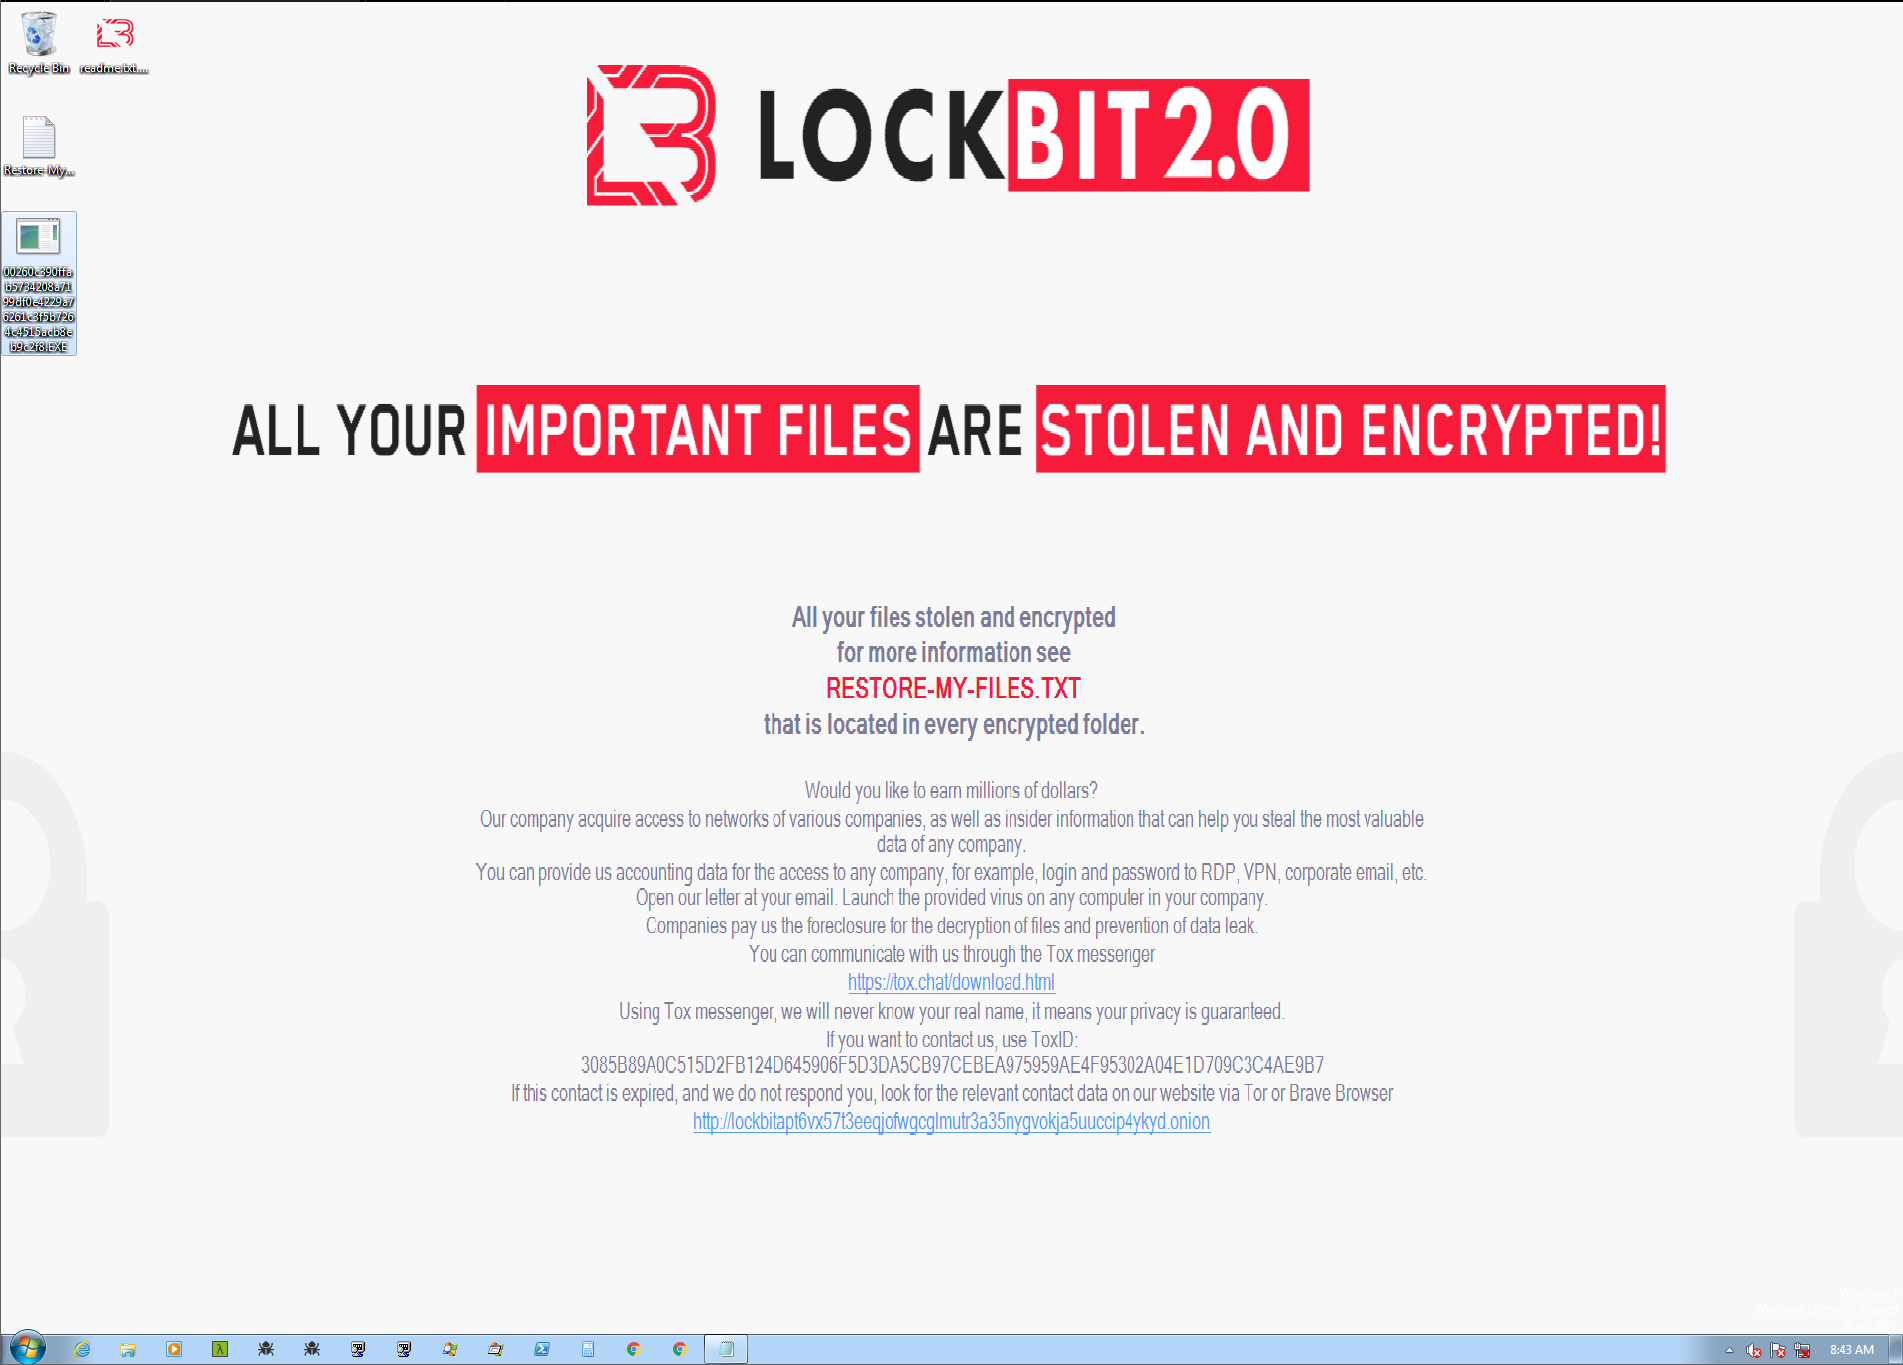 LockBitの攻撃が成功すると、このソフトウェアは被害者のデスクトップの壁紙を変更する。 